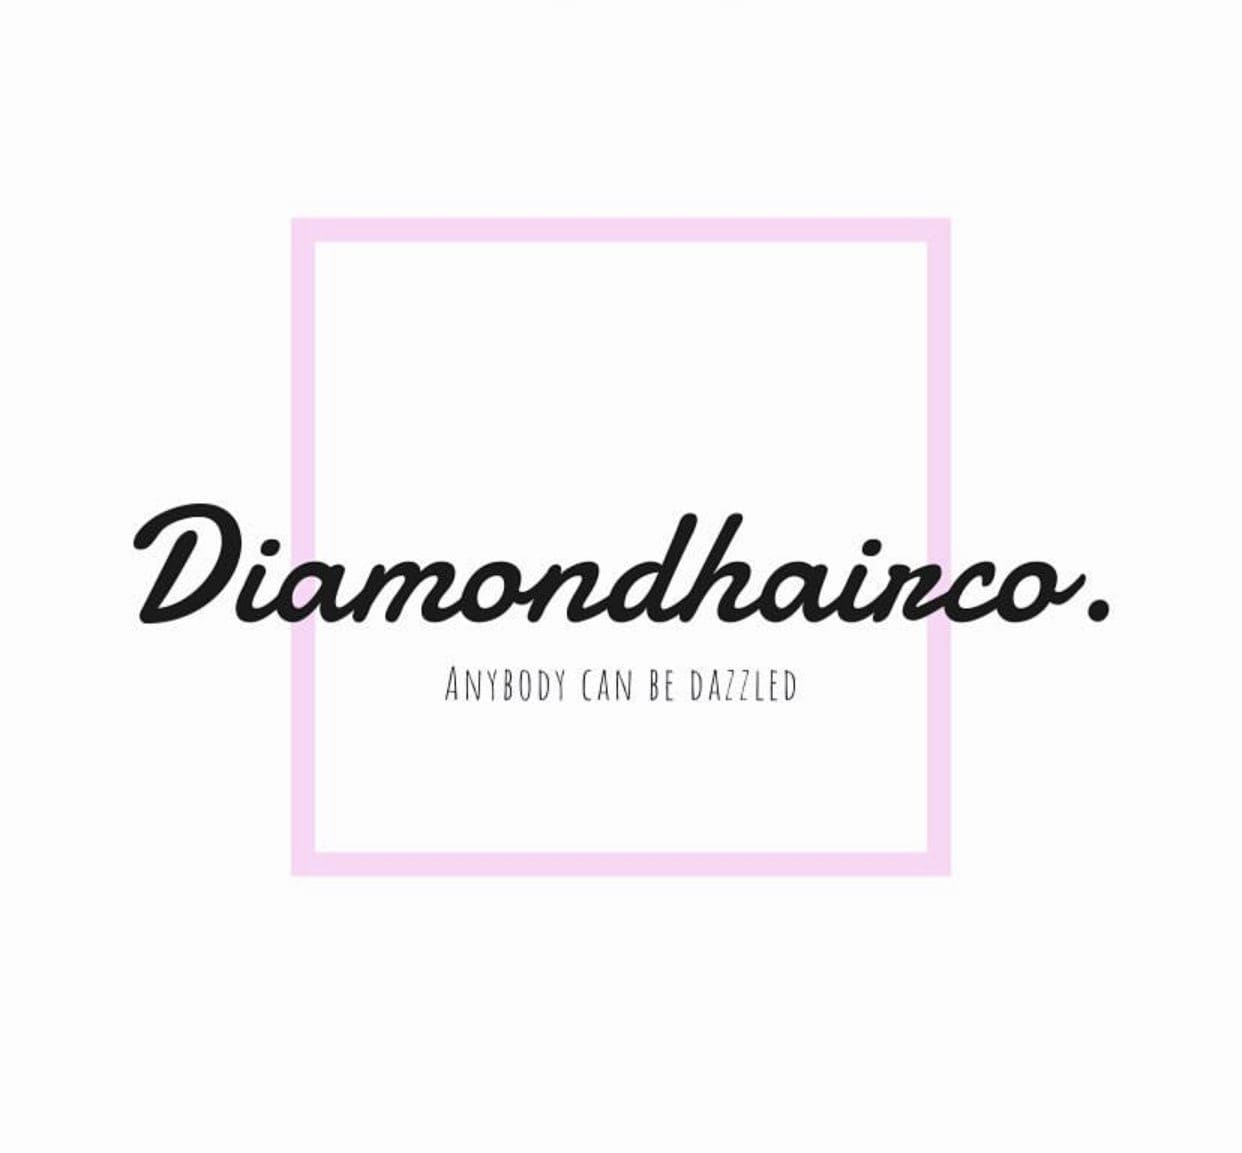 Diamond Hair Co.